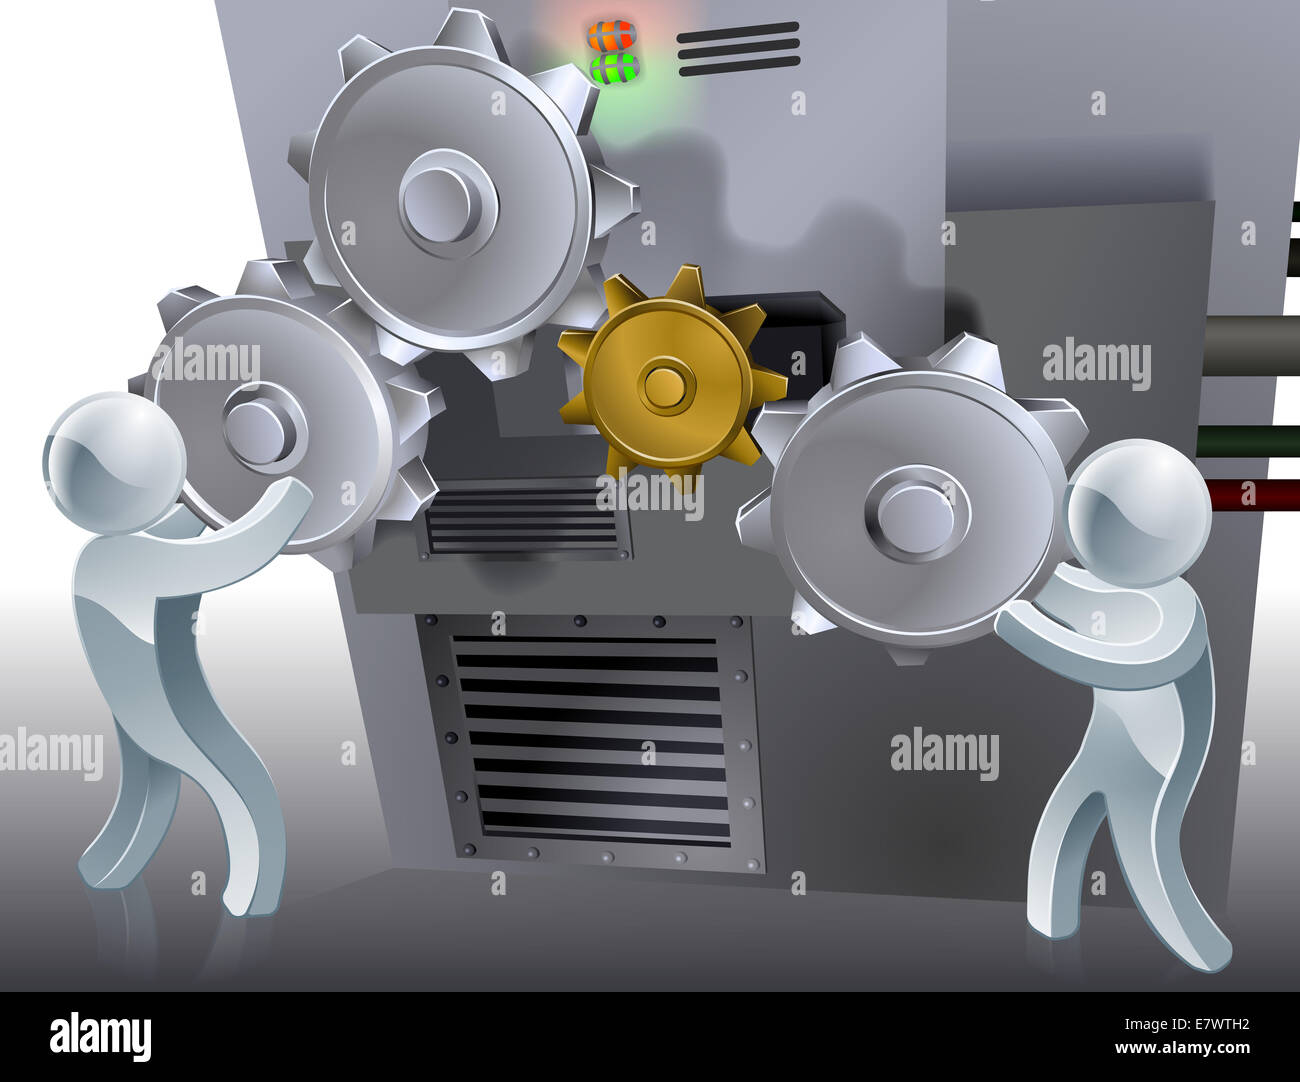 Zahnräder konzeptionelle Darstellung der zwei 3D-Figuren arbeiten eine Maschine mit Rädchen oder Zahnräder. Stockfoto